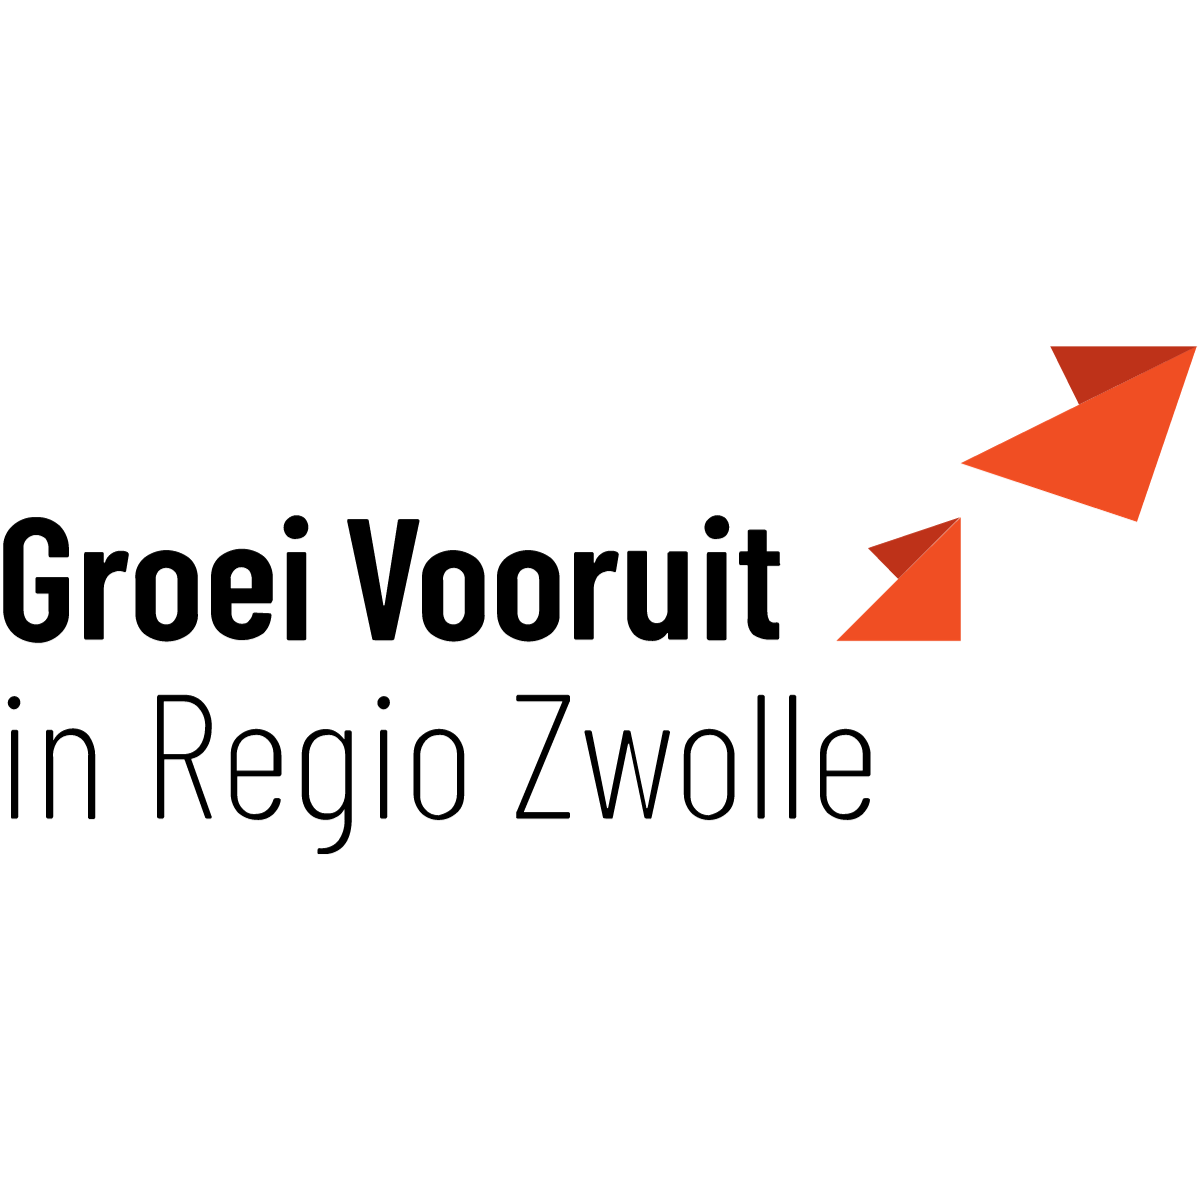 Groei Vooruit Regio Zwolle Werkfestival Steenwijkerland